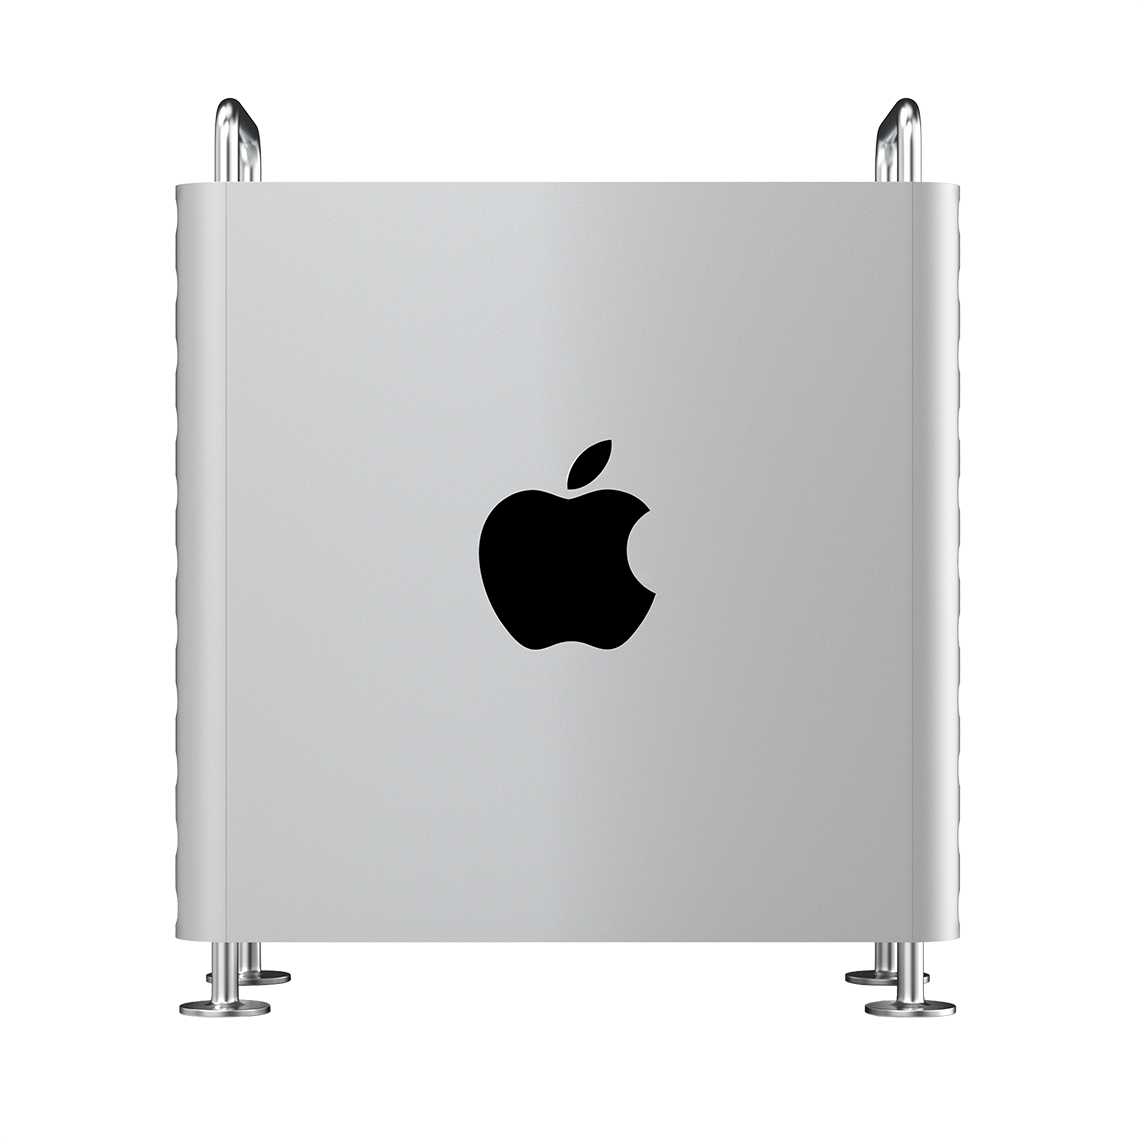 Apple 2019 Mac Pro - Intel Xeon 28-Core, 768GB RAM, 8TB Flash, AMD Radeon Pro Vega II Duo 64GB, Tower, Grade A